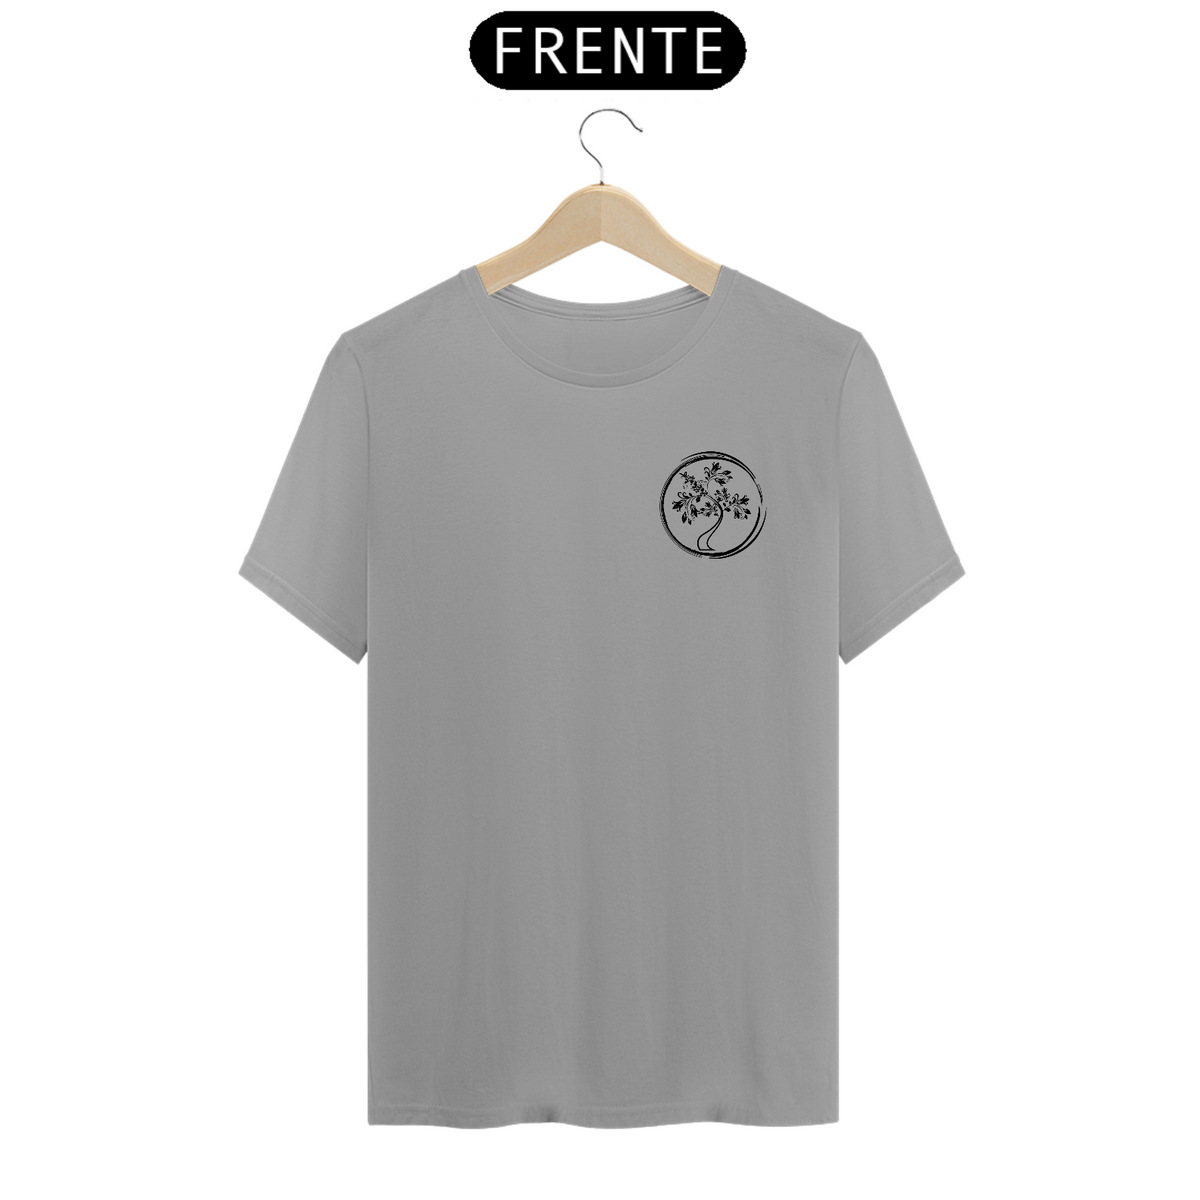 Nome do produto: Árvore - T-shirt (cores claras)